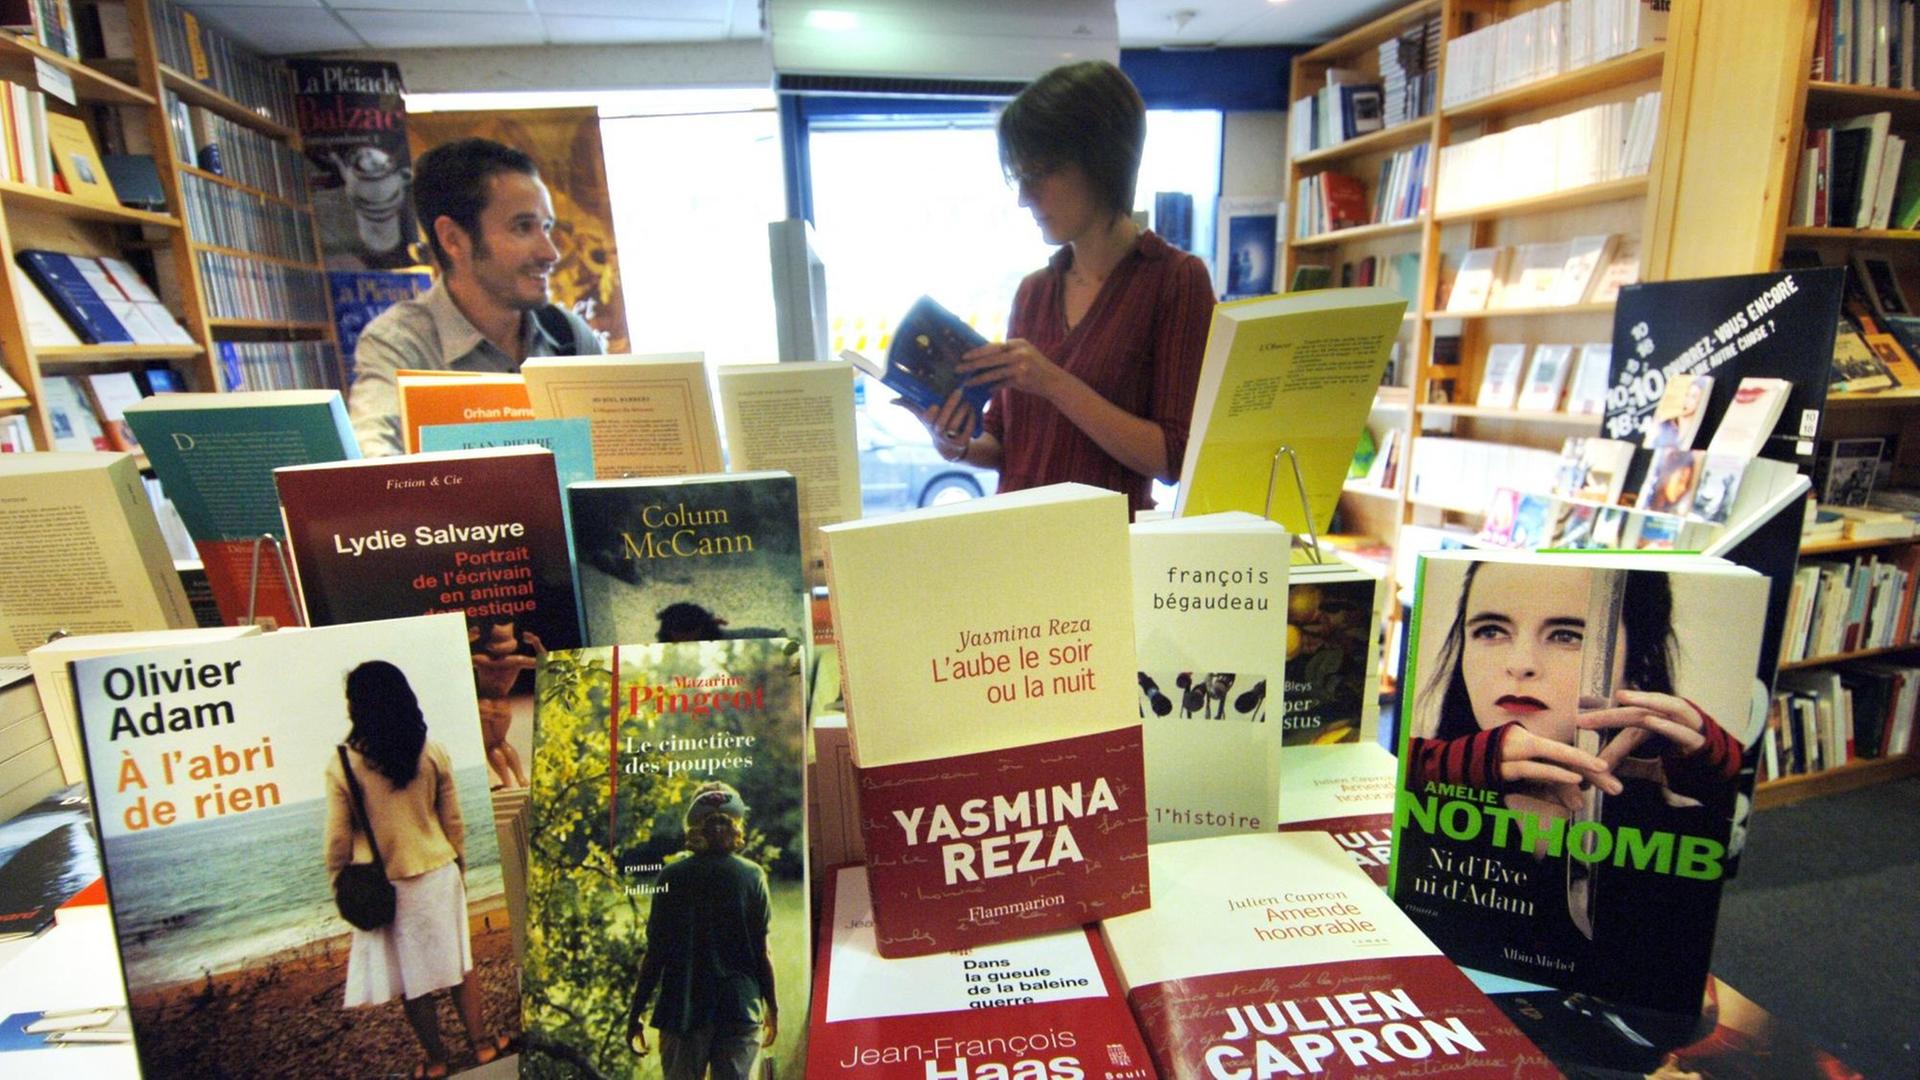 Hunderte Neuerscheinungen tauchen auf einen Schlag bei den französischen Buchhändlern auf.